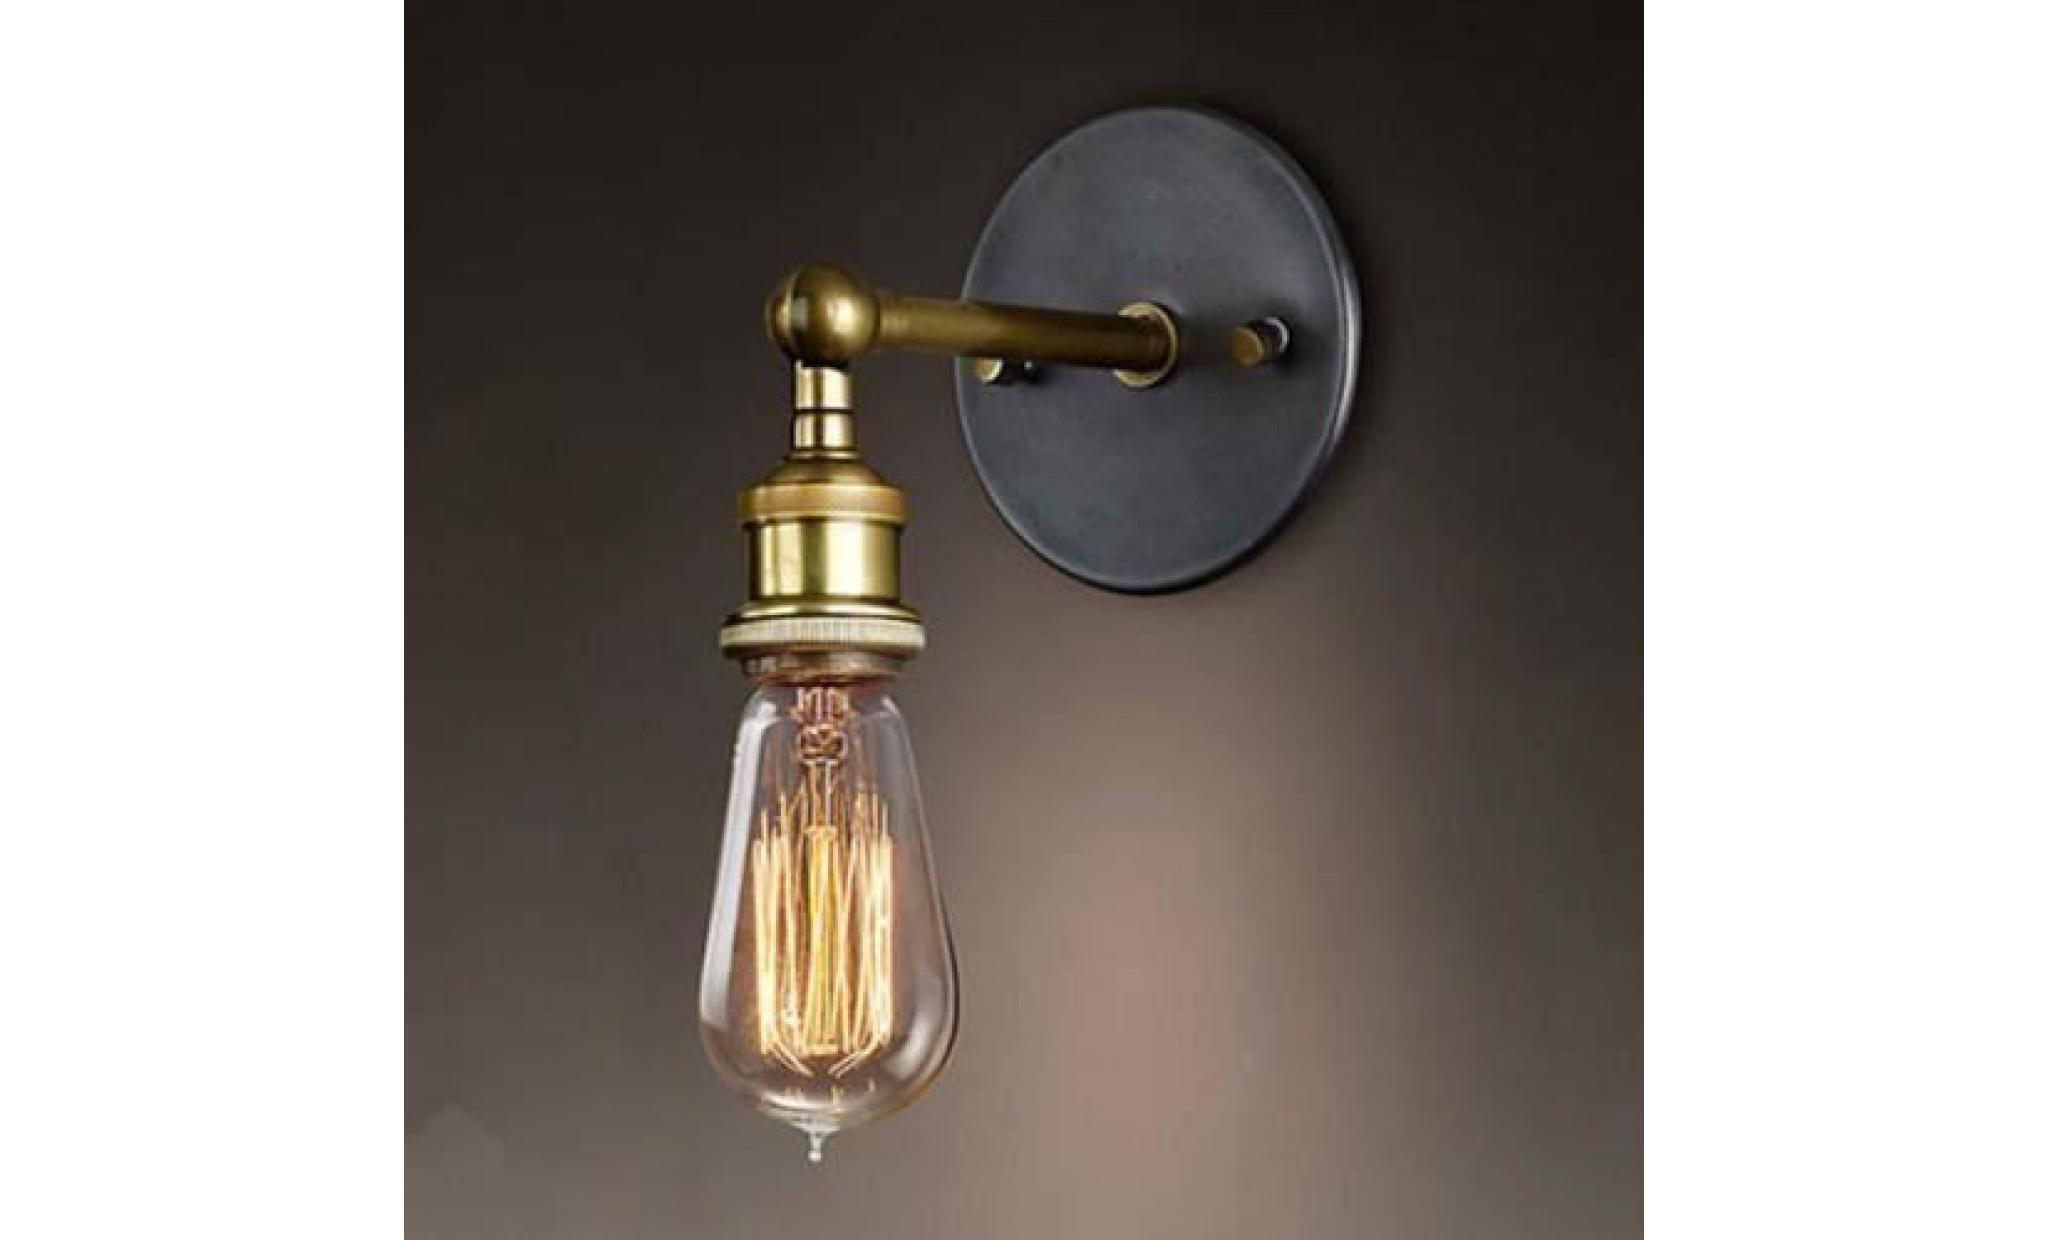 rétro luminaire applique murale style industriel réglable finition de laiton Éclairage vintage edison lampe douille e27 pour maison